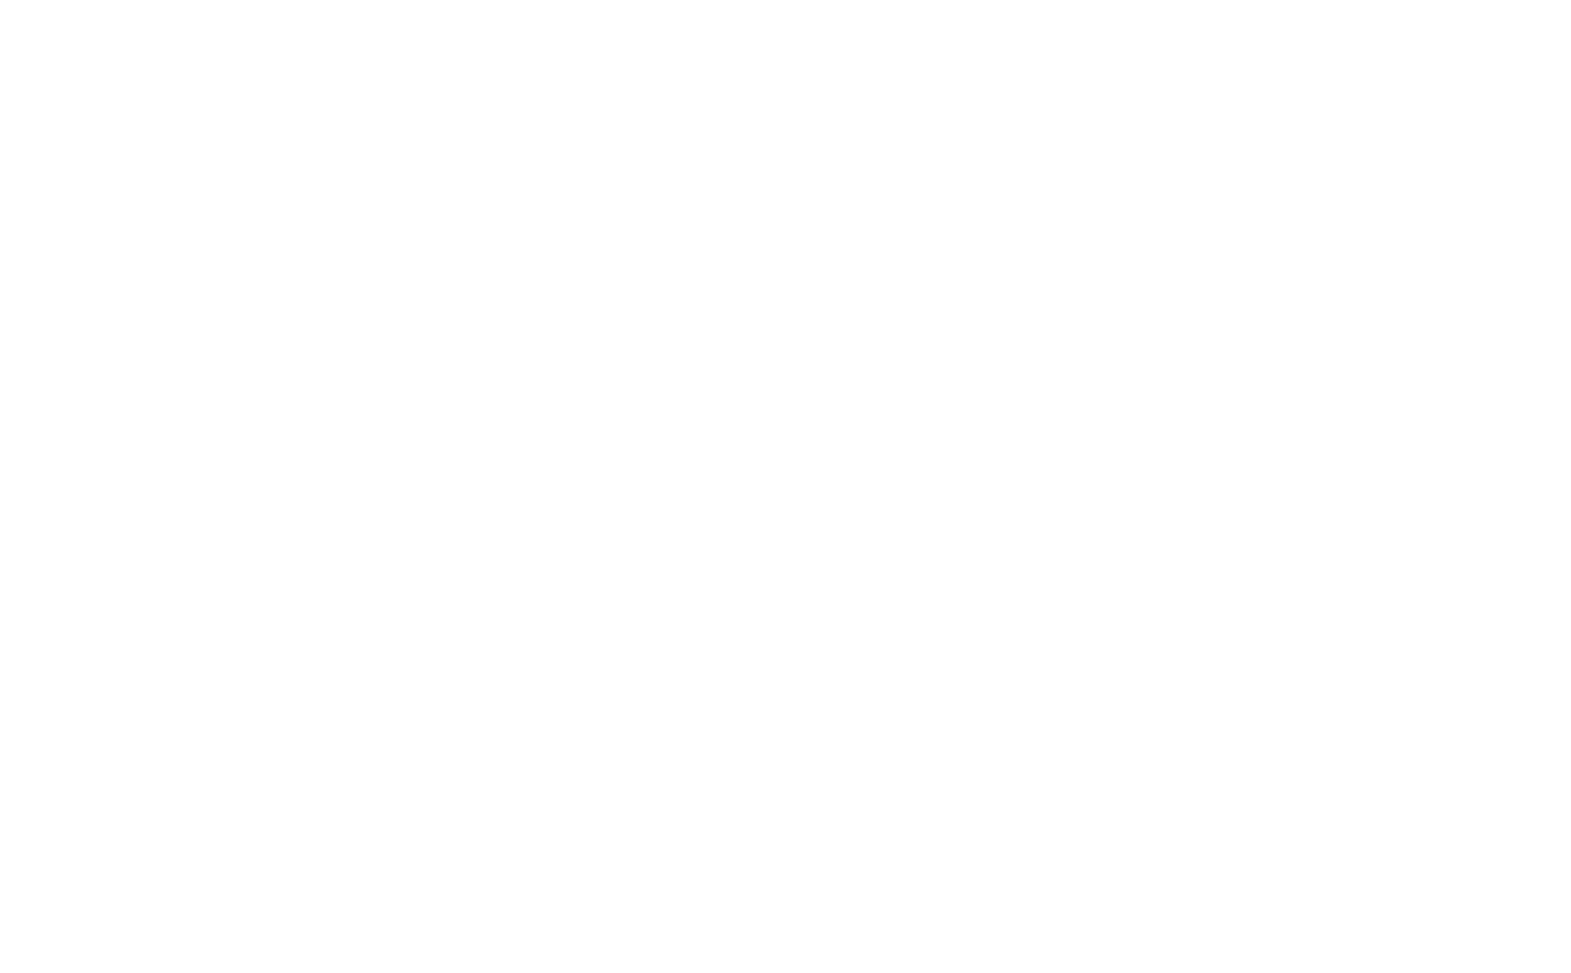 Petro Rio logo pour fonds sombres (PNG transparent)